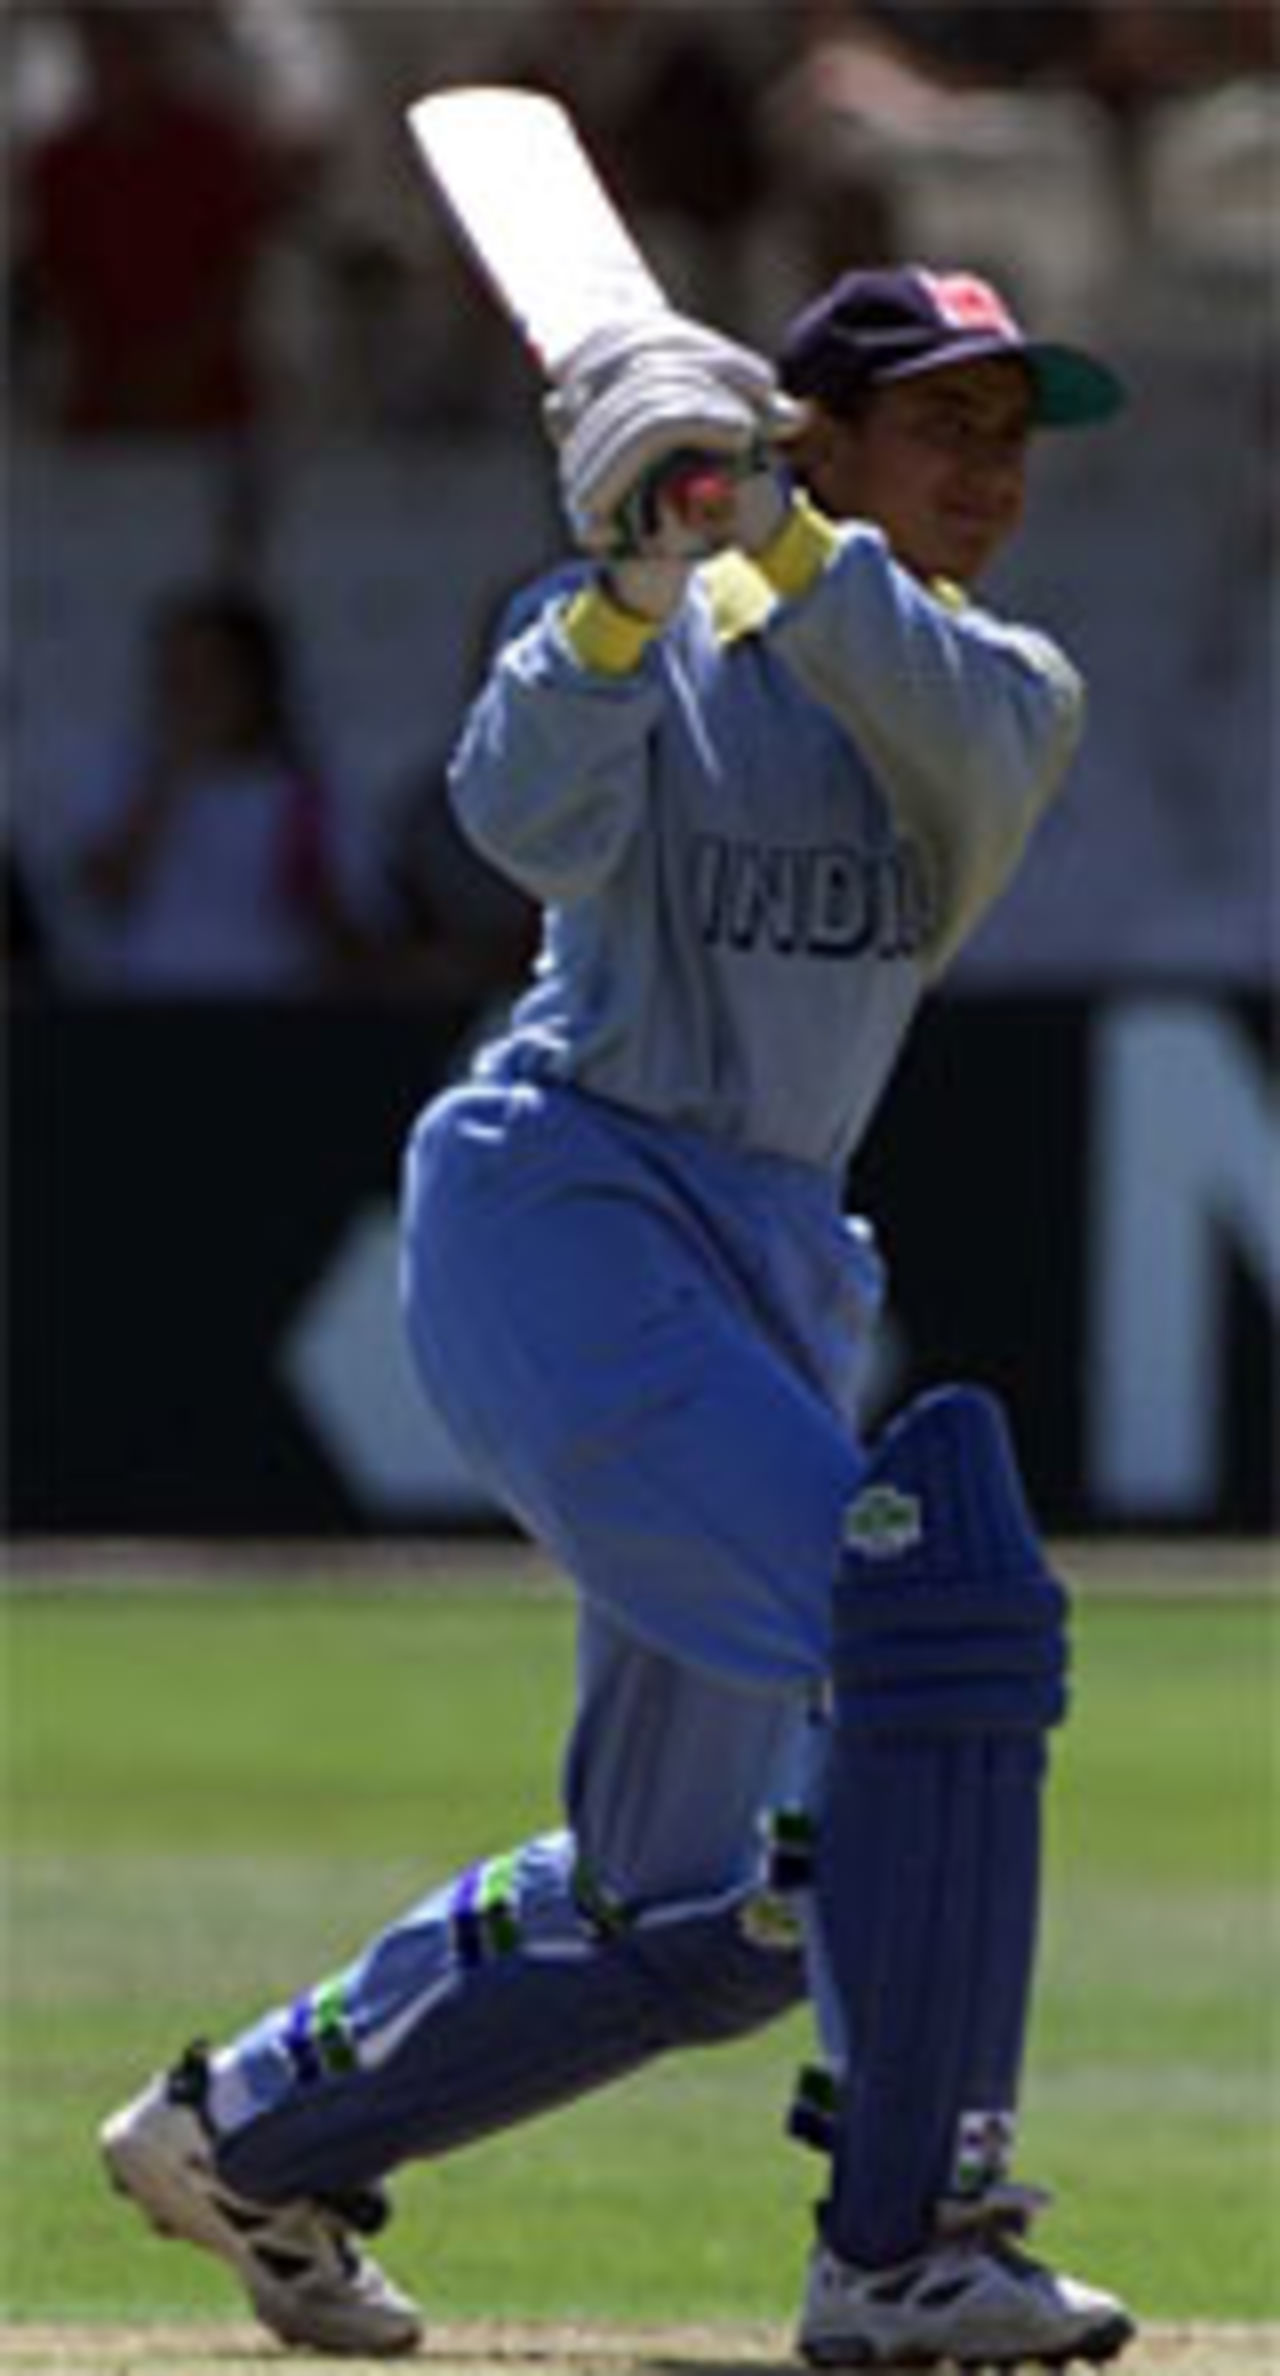 Anjum Chopra smashes another boundary, England v India, 1999